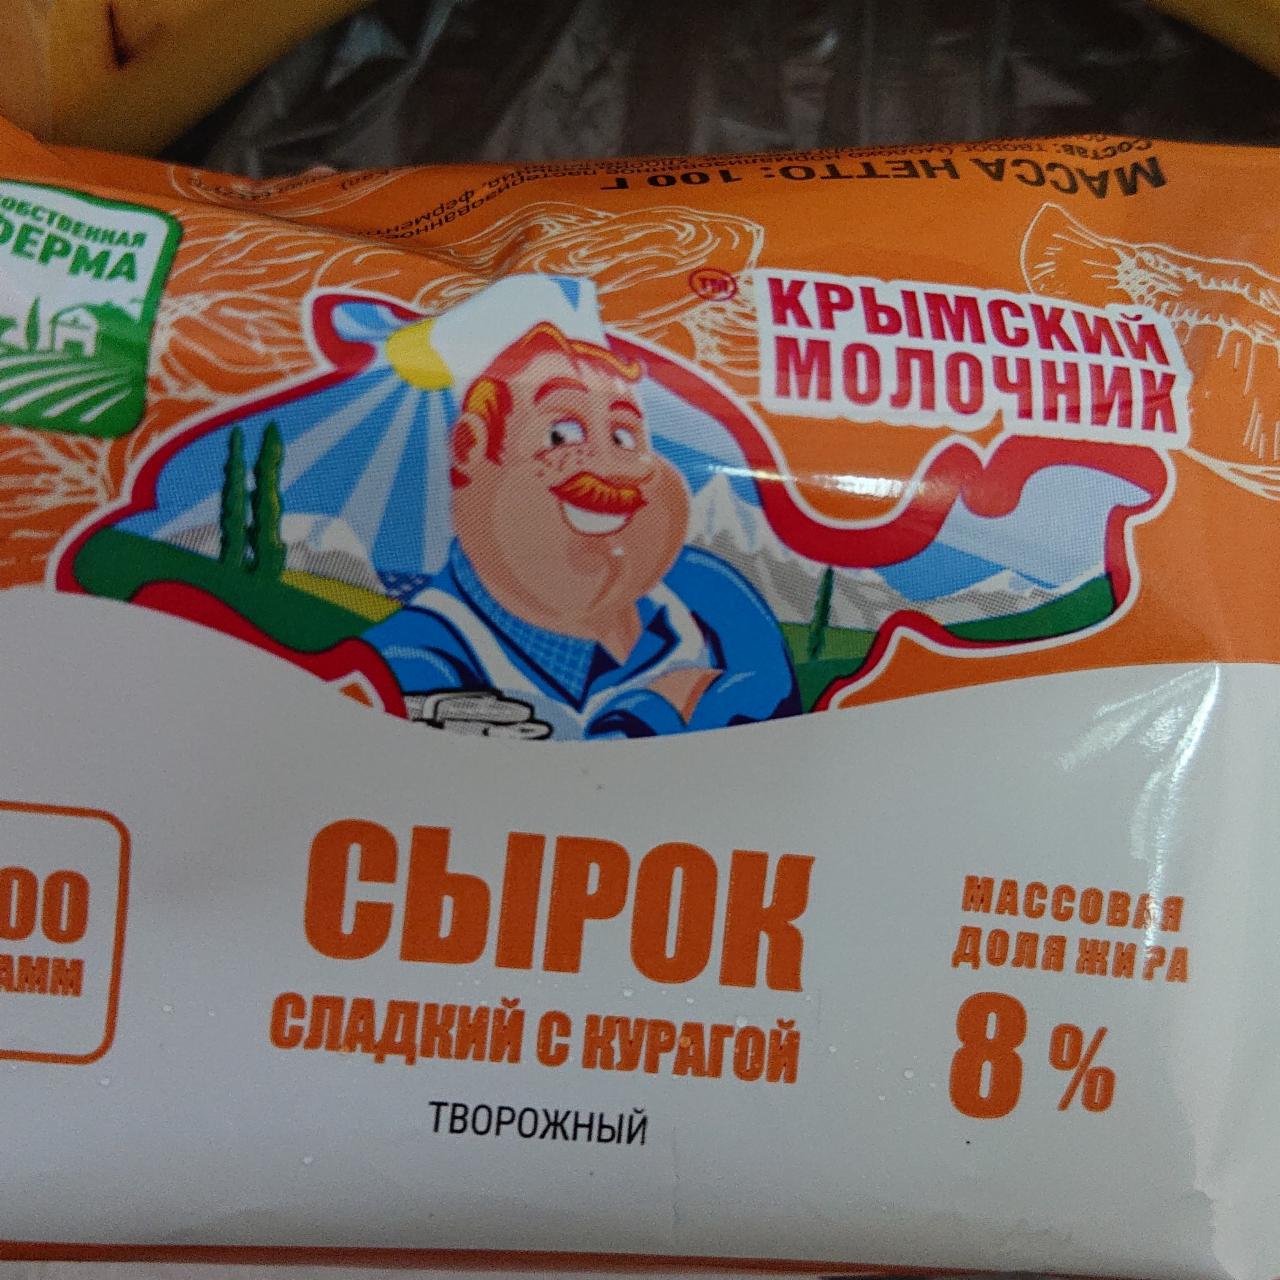 Фото - Сырок сладкий с курагой Крымский молочник